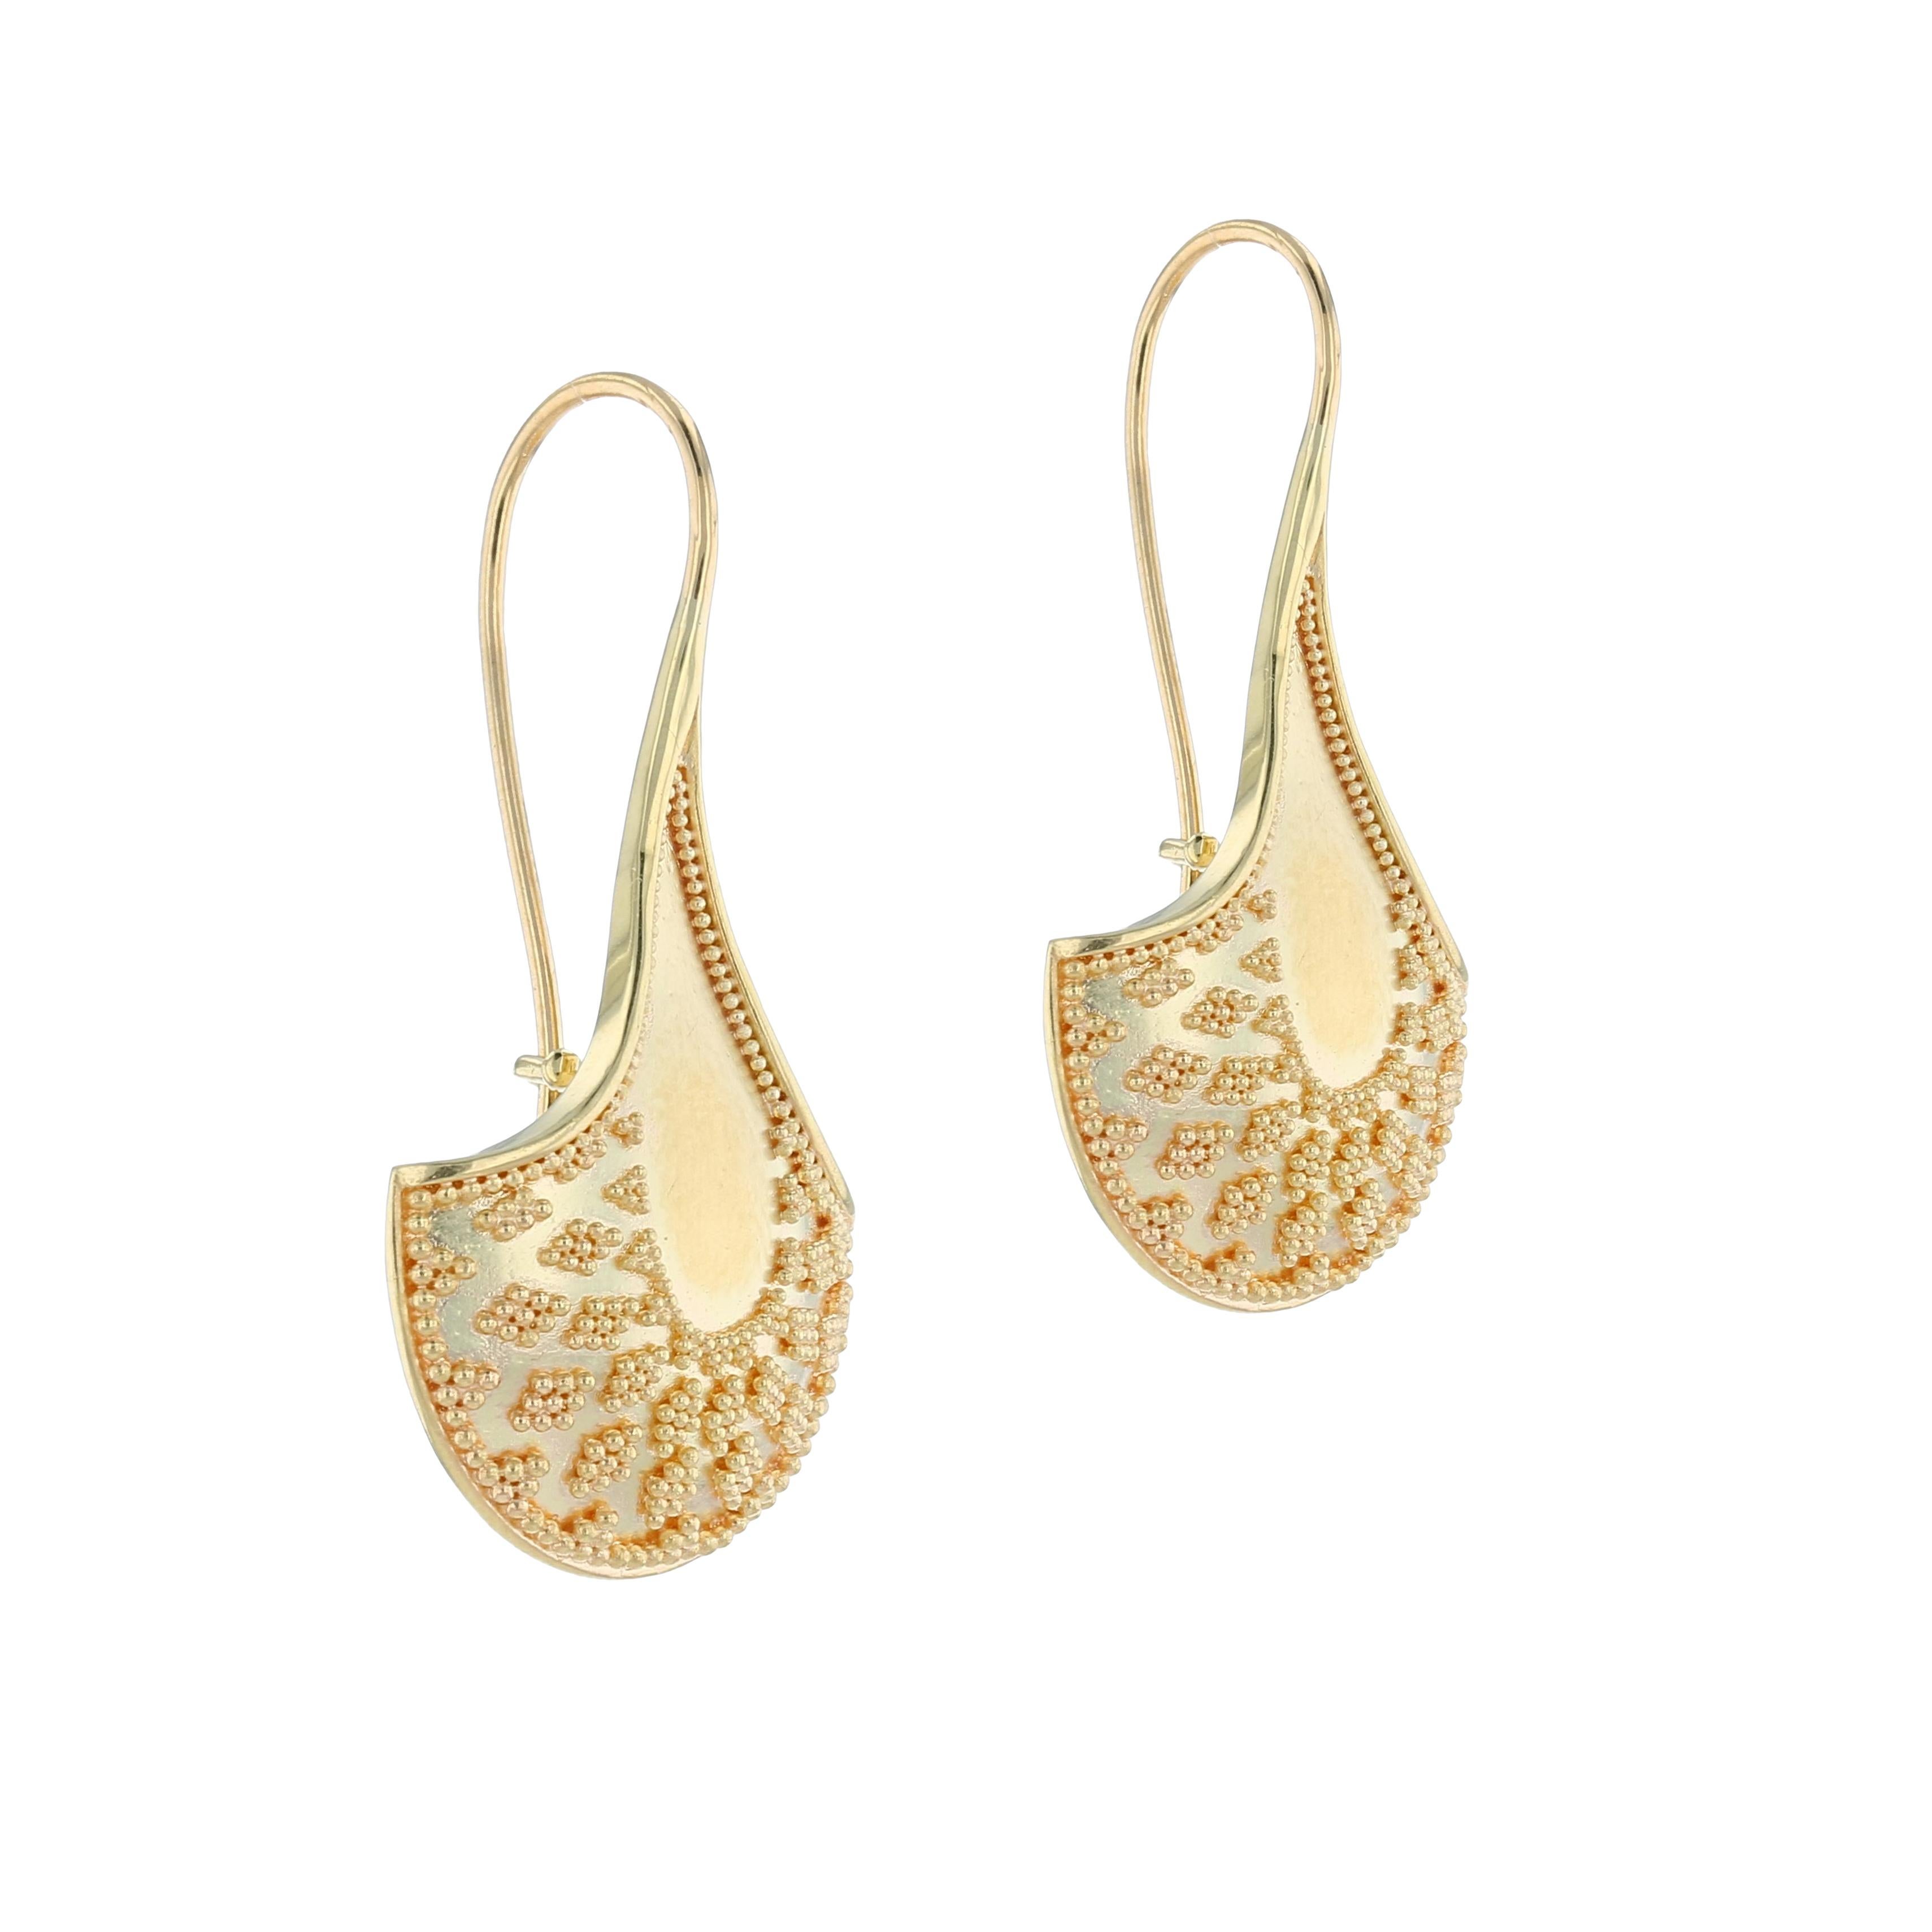 Kent Raible's 18 Karat Gold 'Fan' Dangle Earrings with fine Granulation For Sale 1